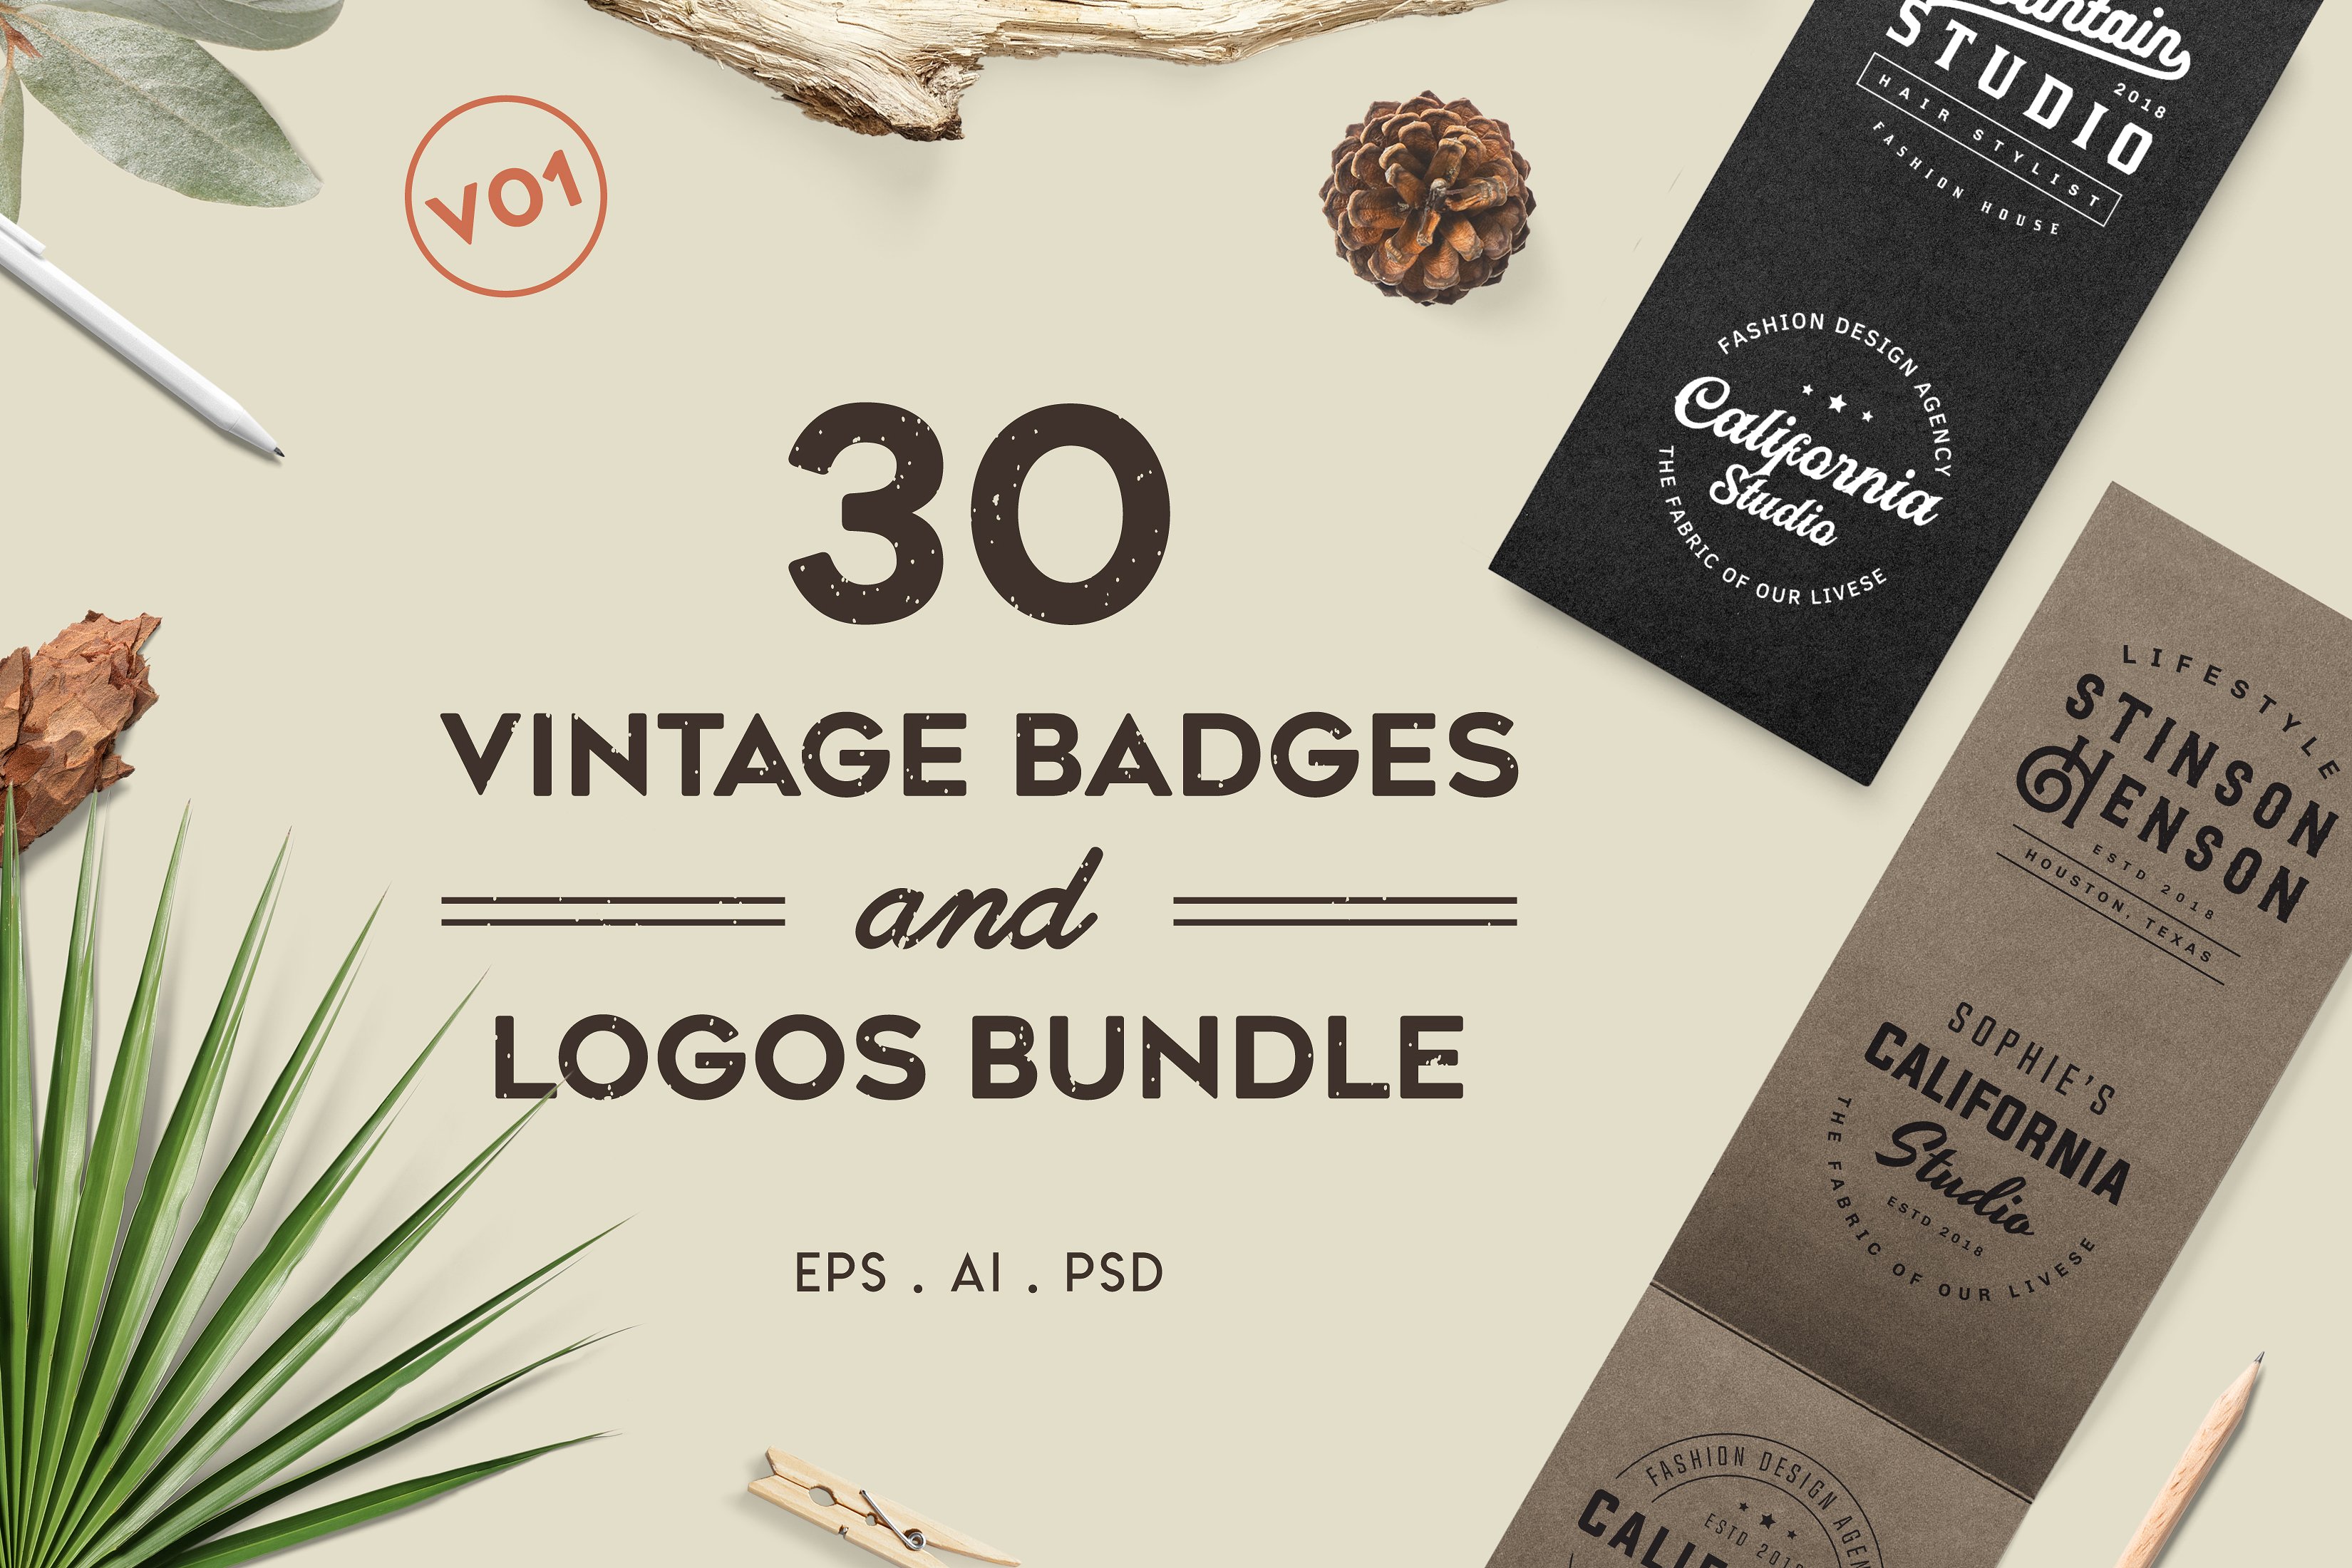 复古徽标&Logo设计模板 Vintage Badges and Logos Bundle V01插图